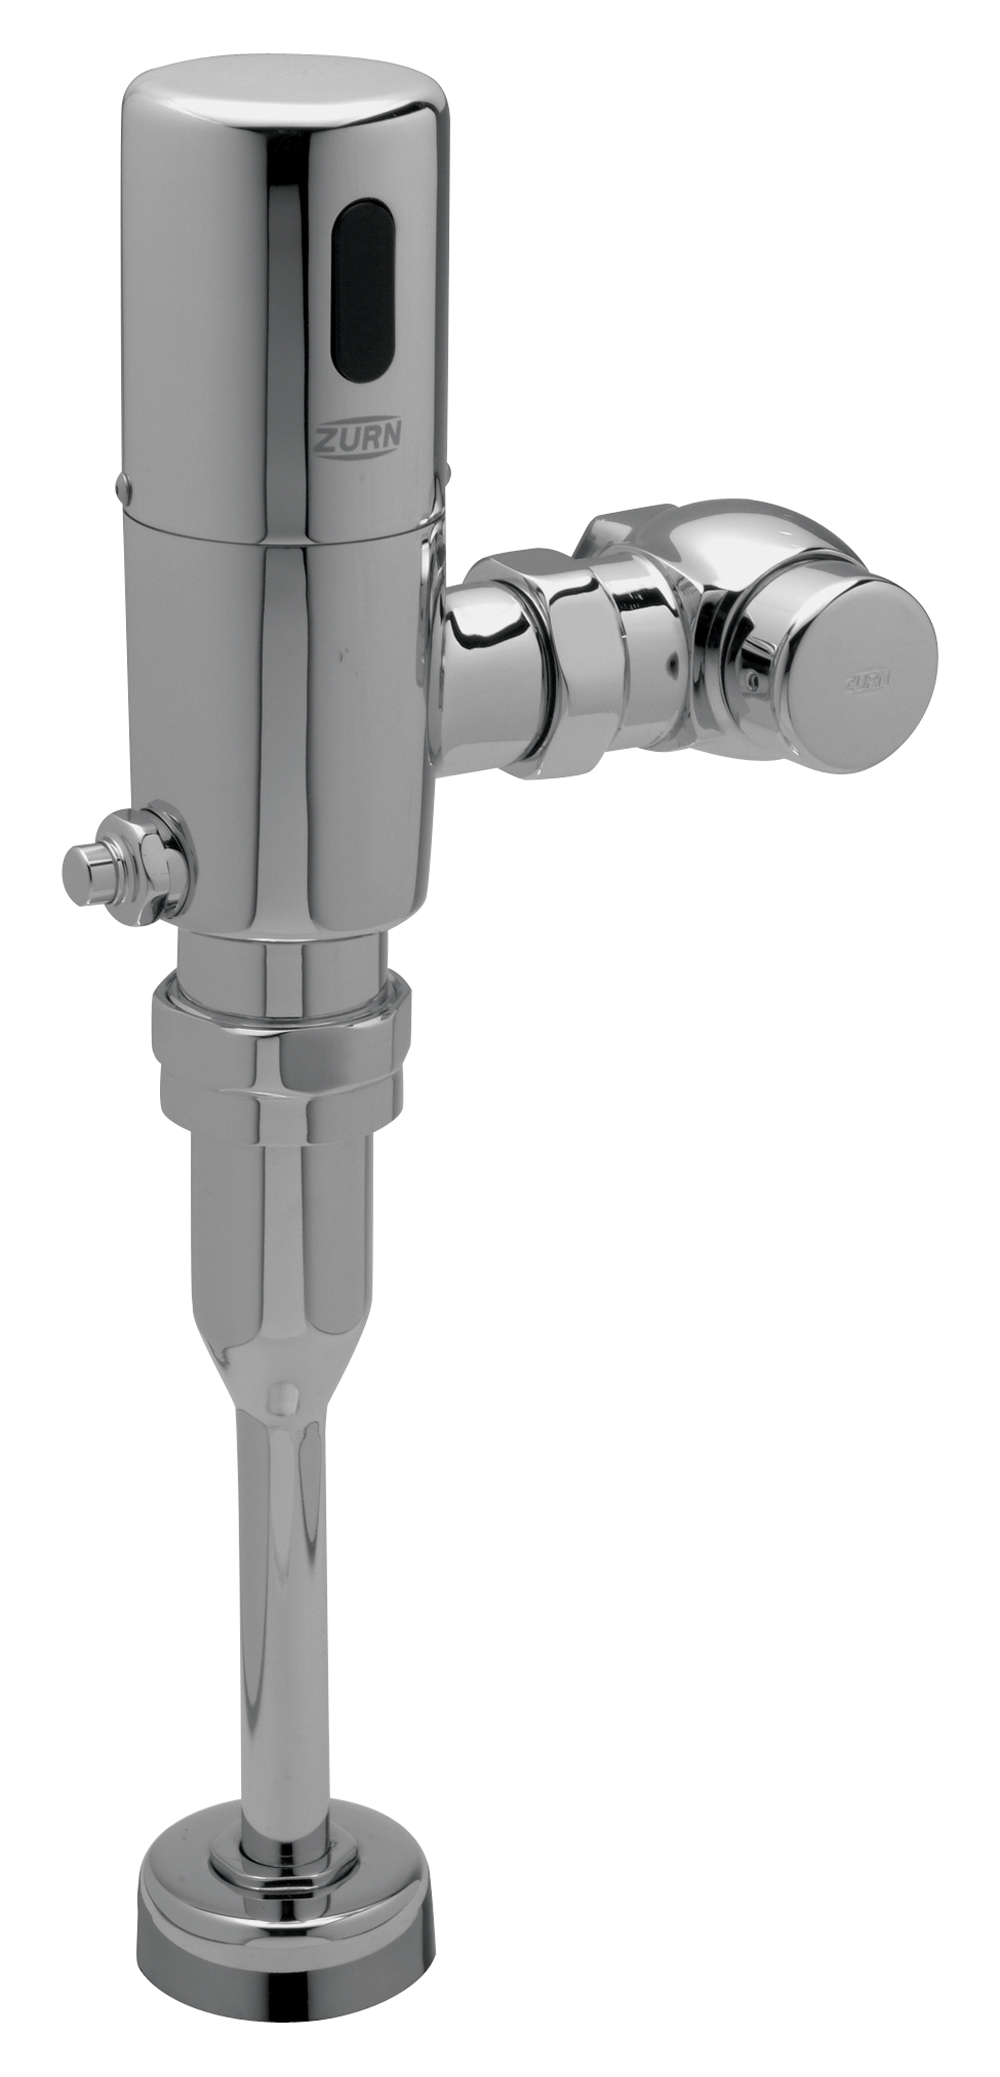 Zurn ZTR6203 Sensor Urinal